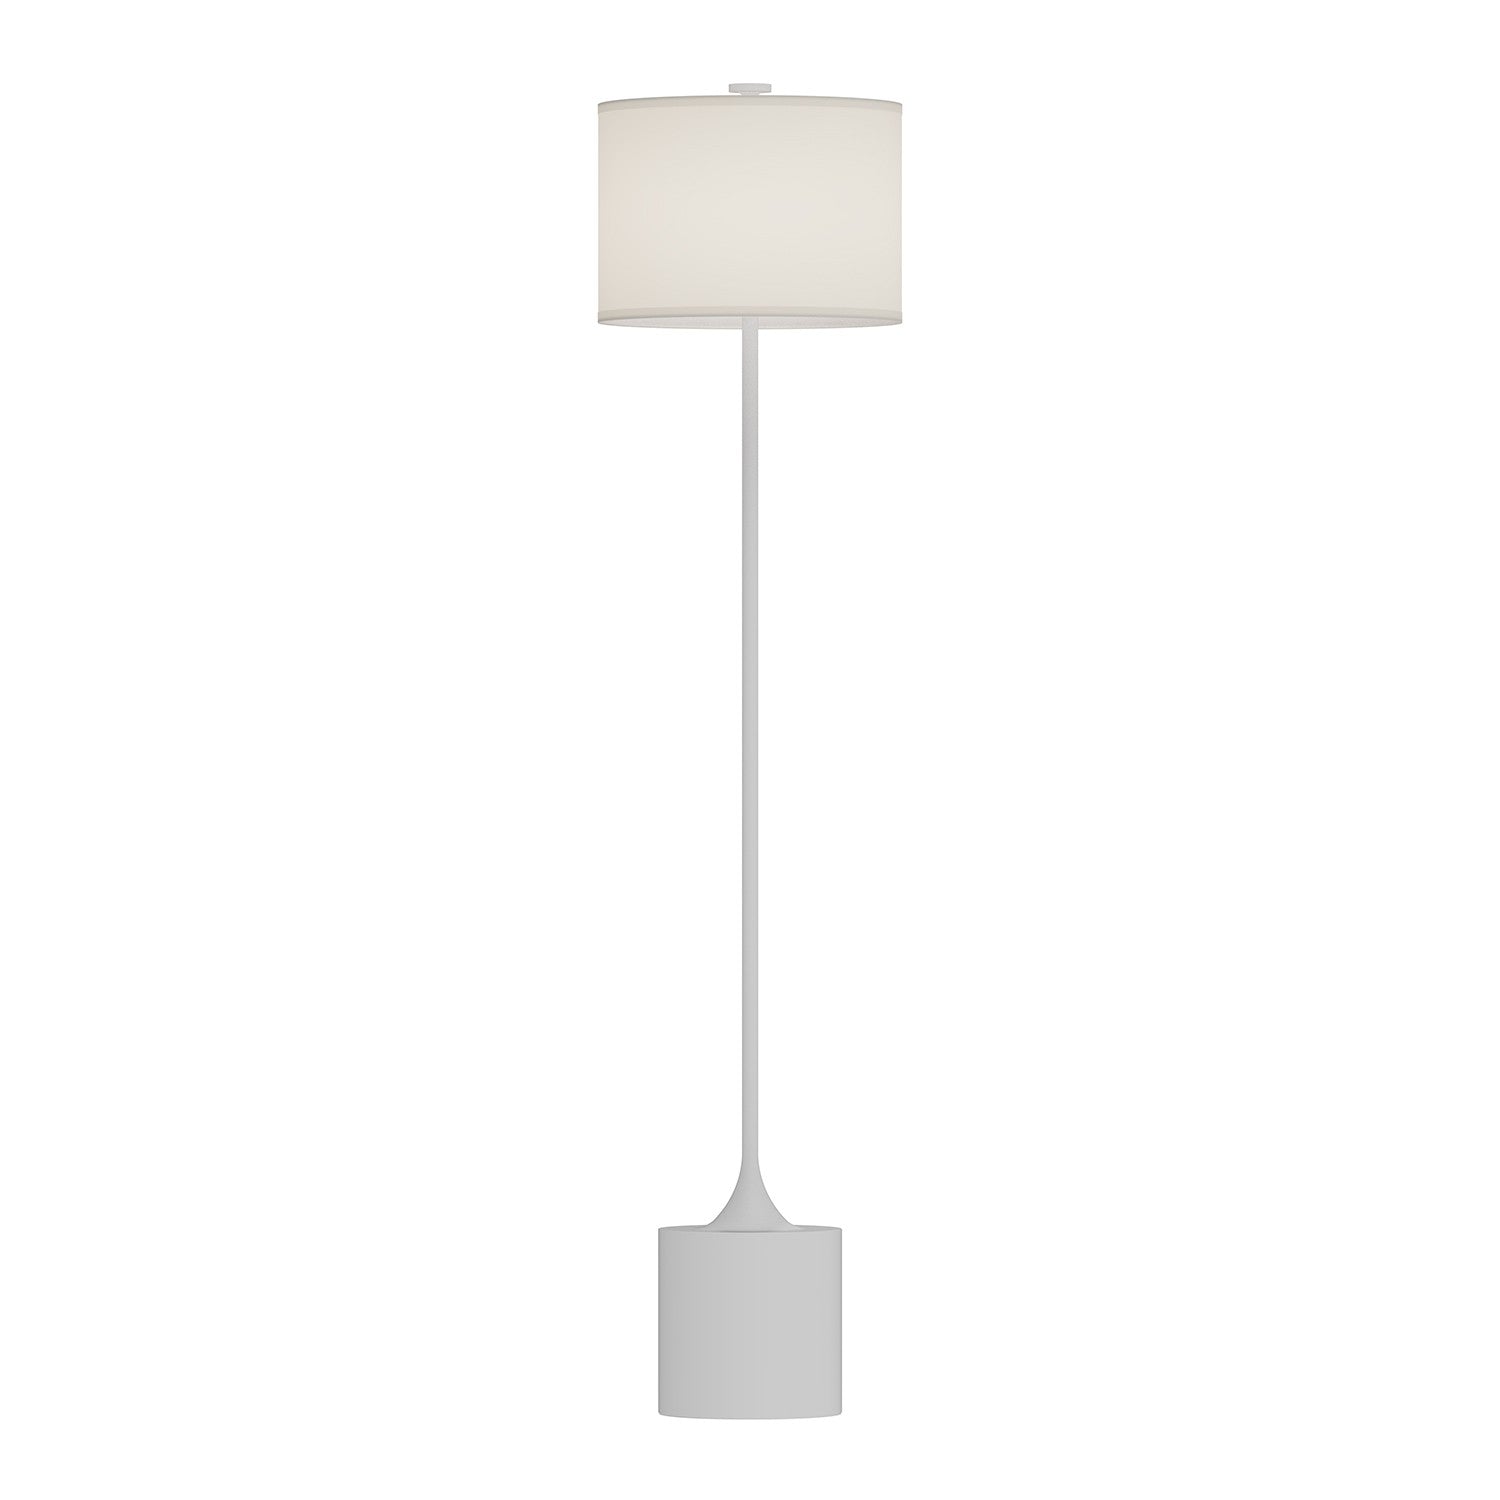 Alora - FL418761WHIL - One Light Floor Lamp - Issa - White/Ivory Linen